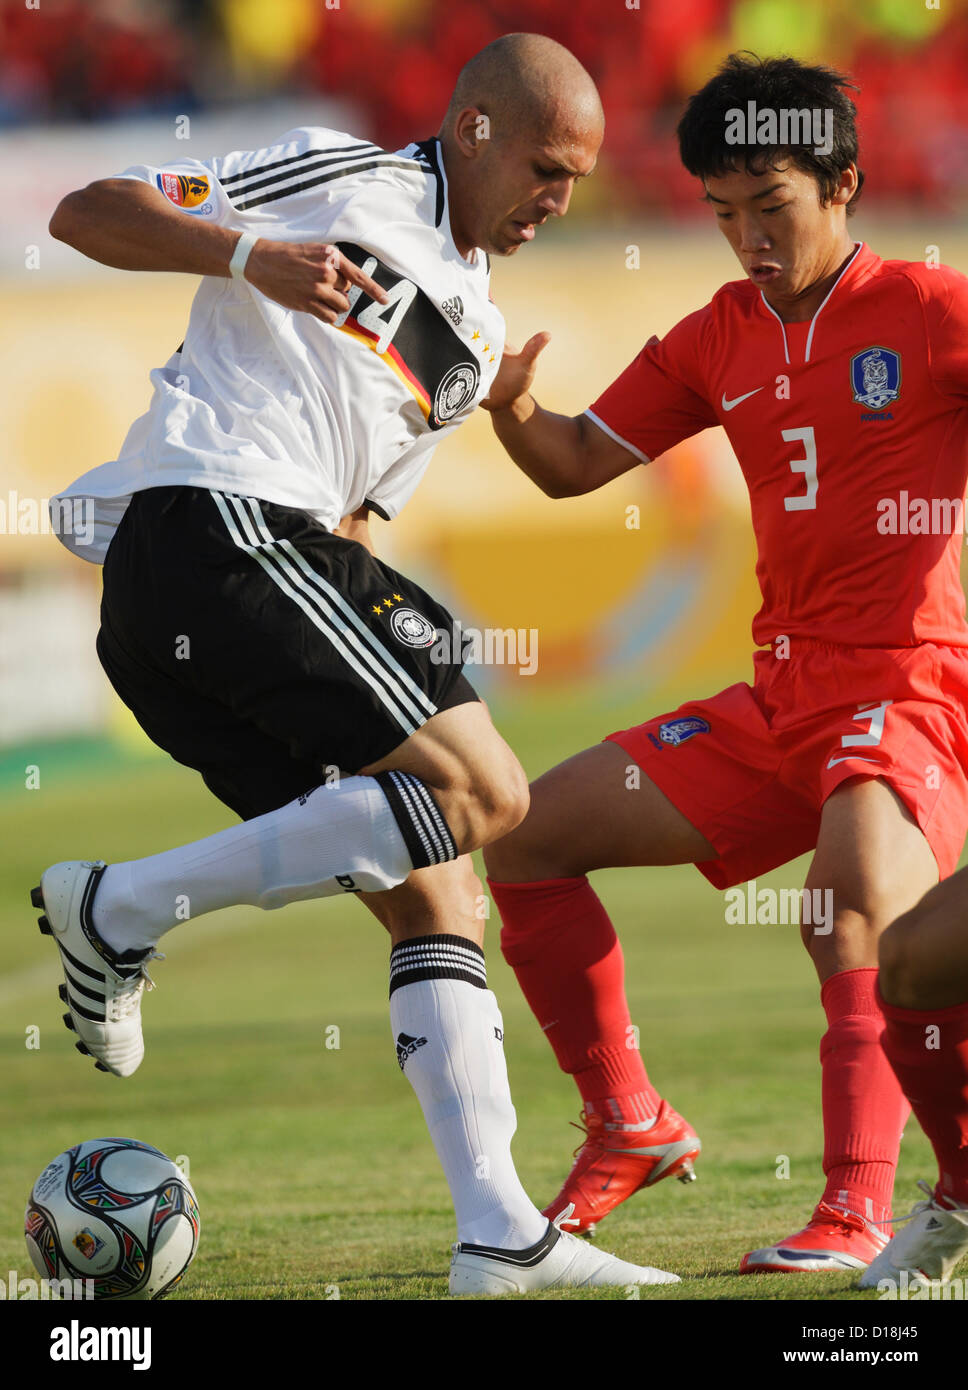 Dani Schahin von Deutschland (L) ändert die Richtung auf Min Woo Kim of South Korea (R) während eines Spiels 2009 FIFA U-20 World Cup Gruppe C. Stockfoto